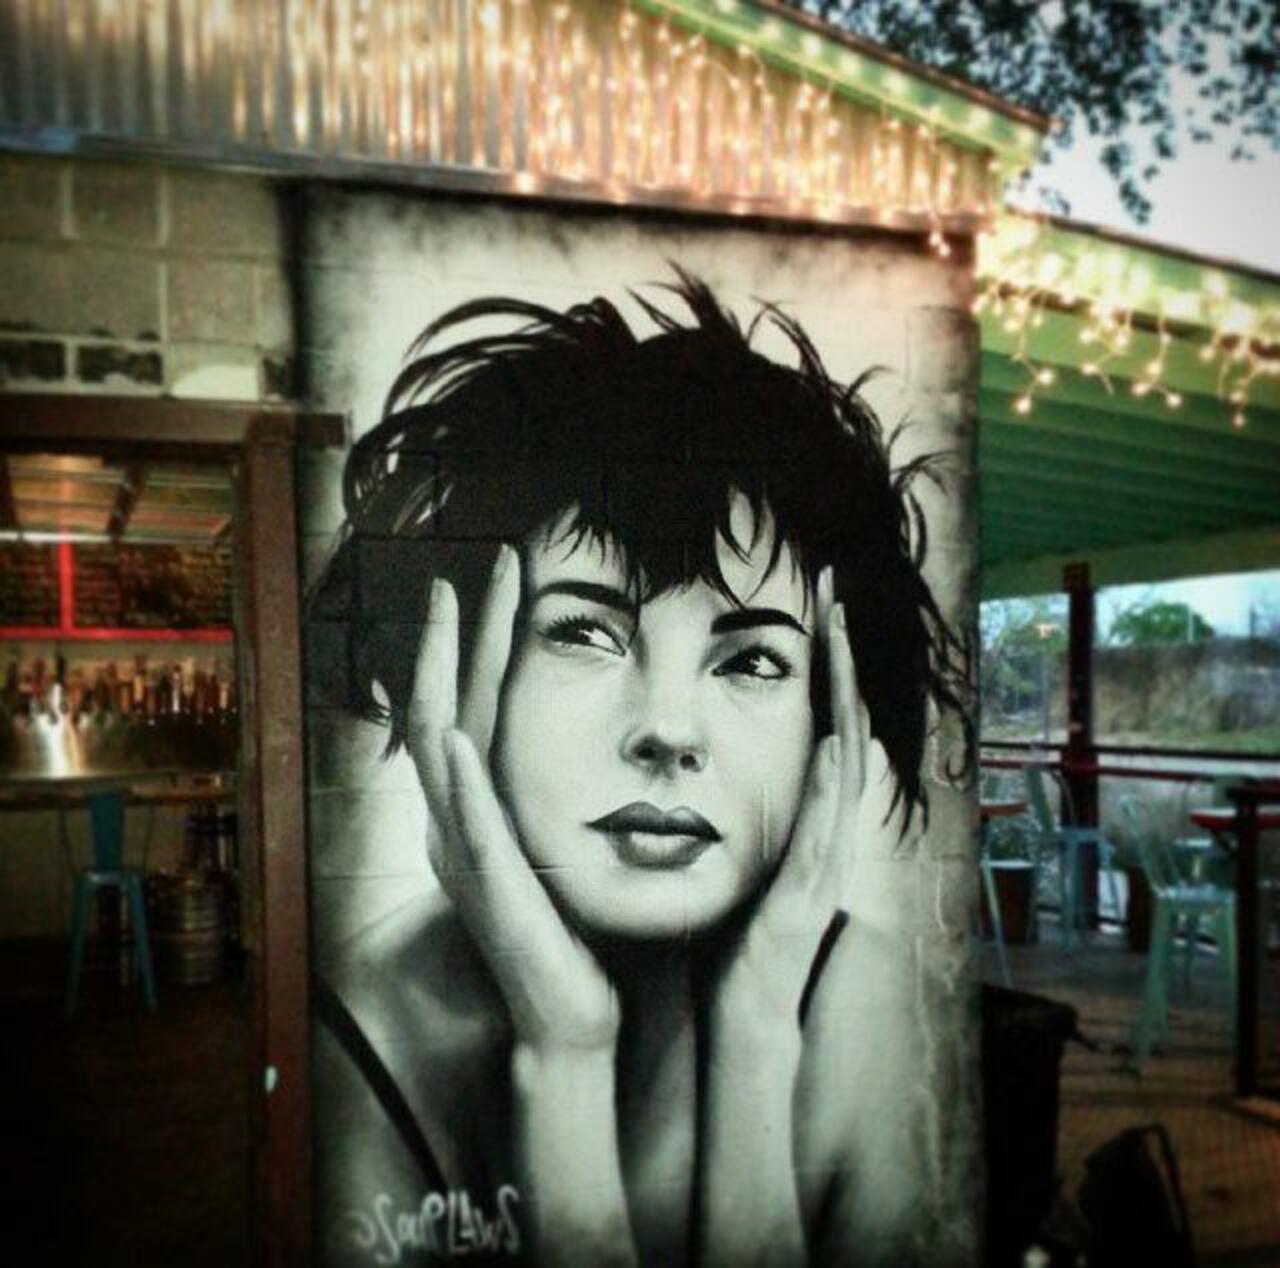 “@GoogleStreetArt: New Street Art by Nik Soupé in Texas 

#art #arte #mural #streetart http://t.co/y9XC1gPM2N”